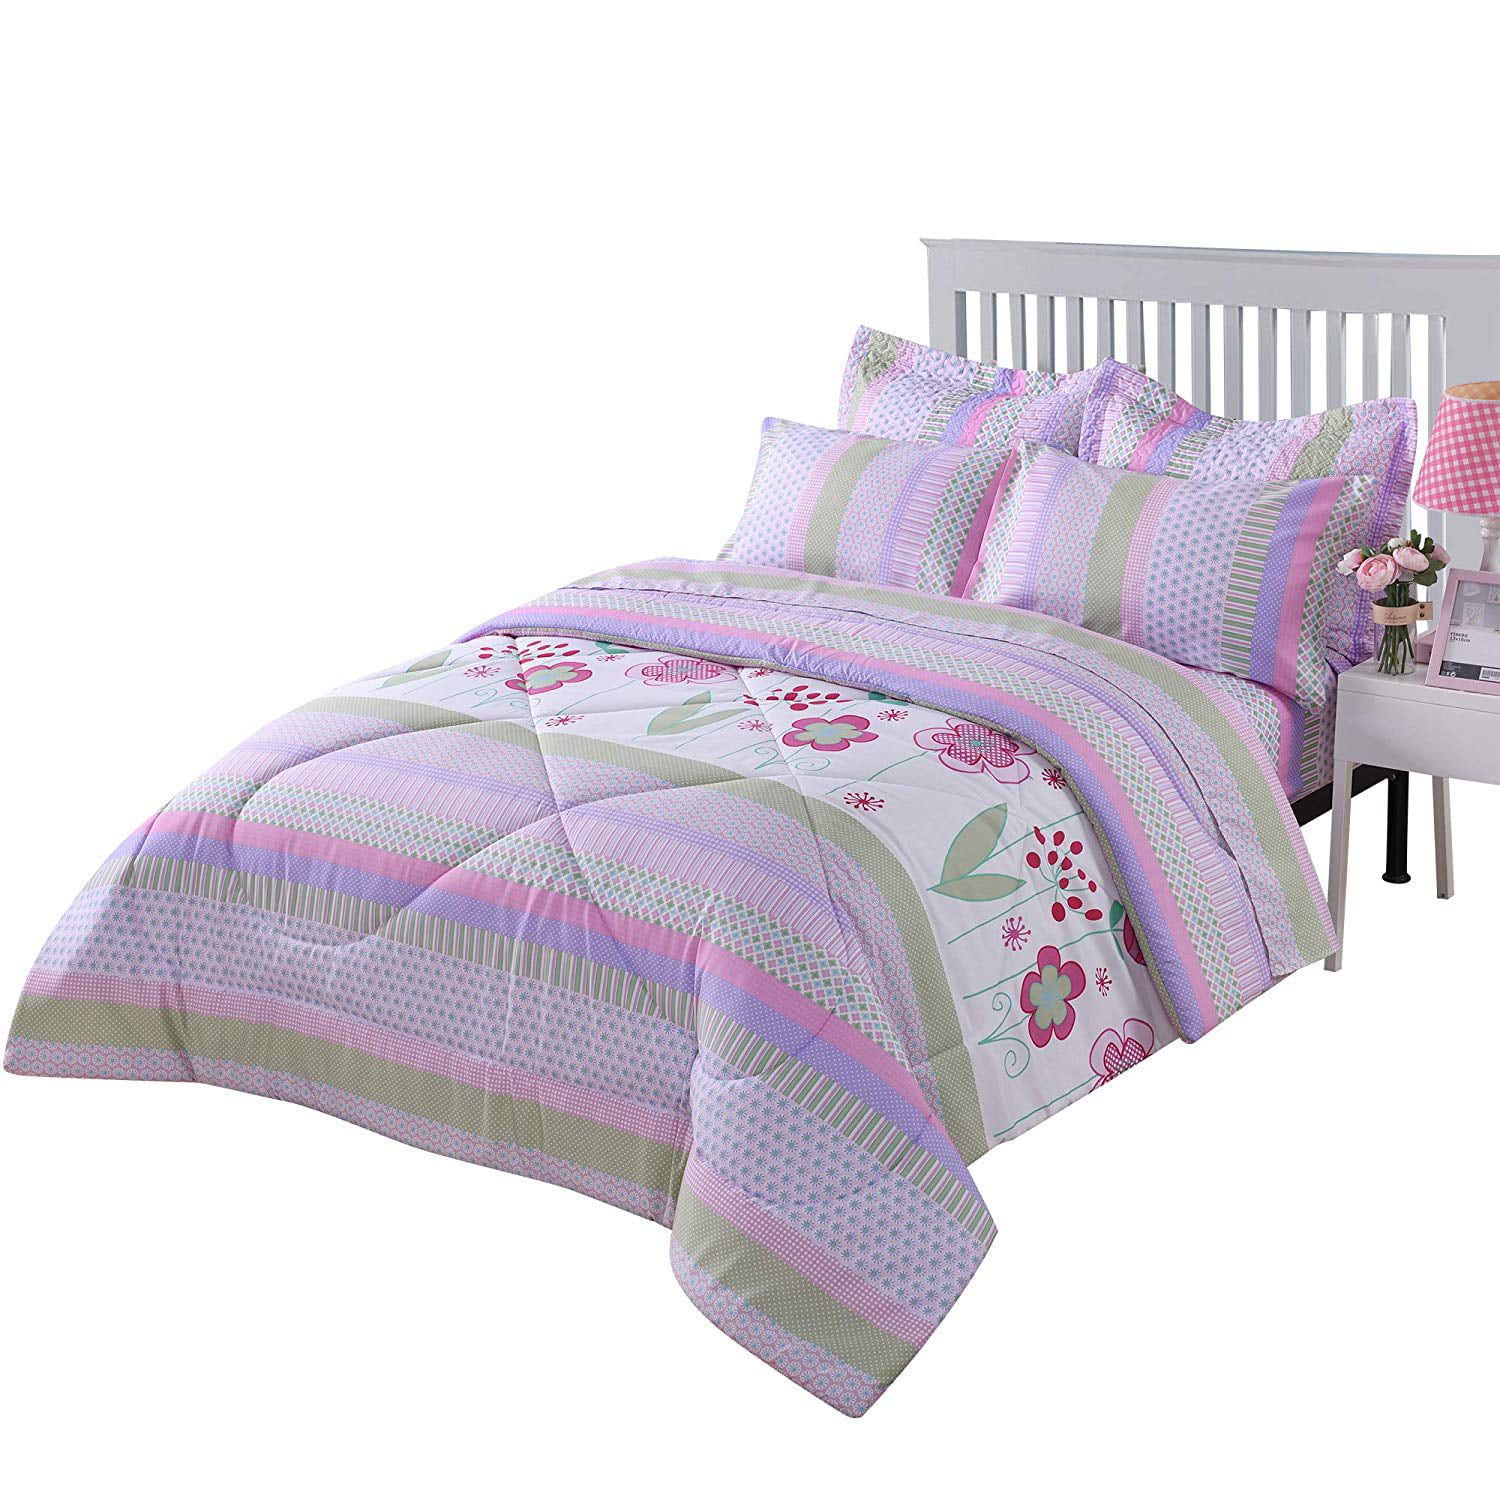 Marcielo Kids Comforter Set Girls, Twin Bunk Bed Quilts